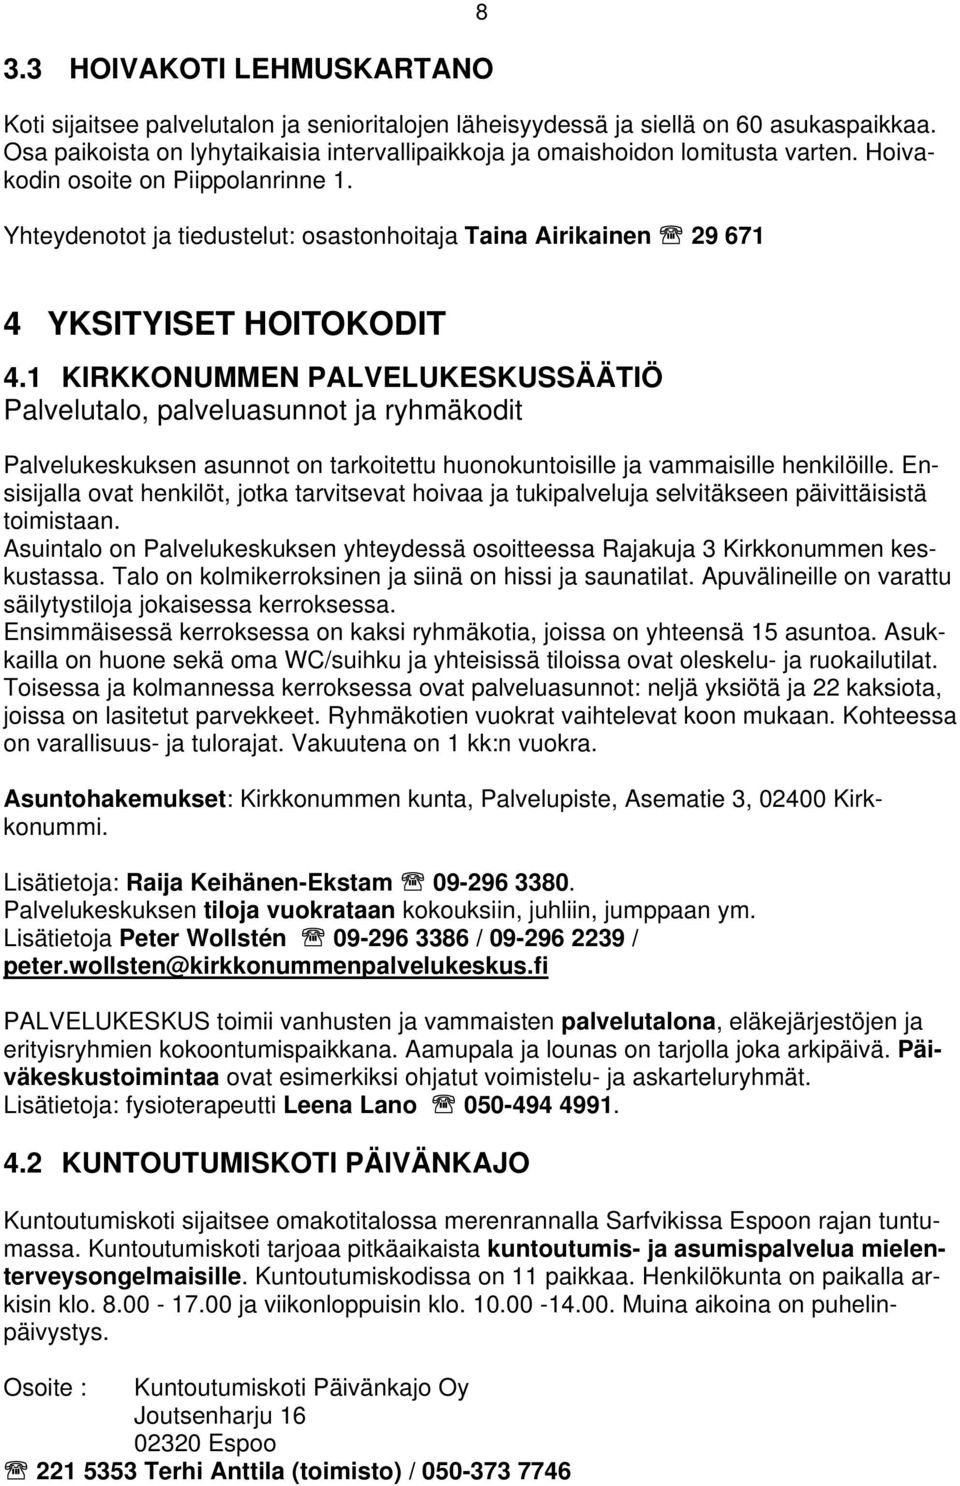 Yhteydenotot ja tiedustelut: osastonhoitaja Taina Airikainen 29 671 8 4 YKSITYISET HOITOKODIT 4.